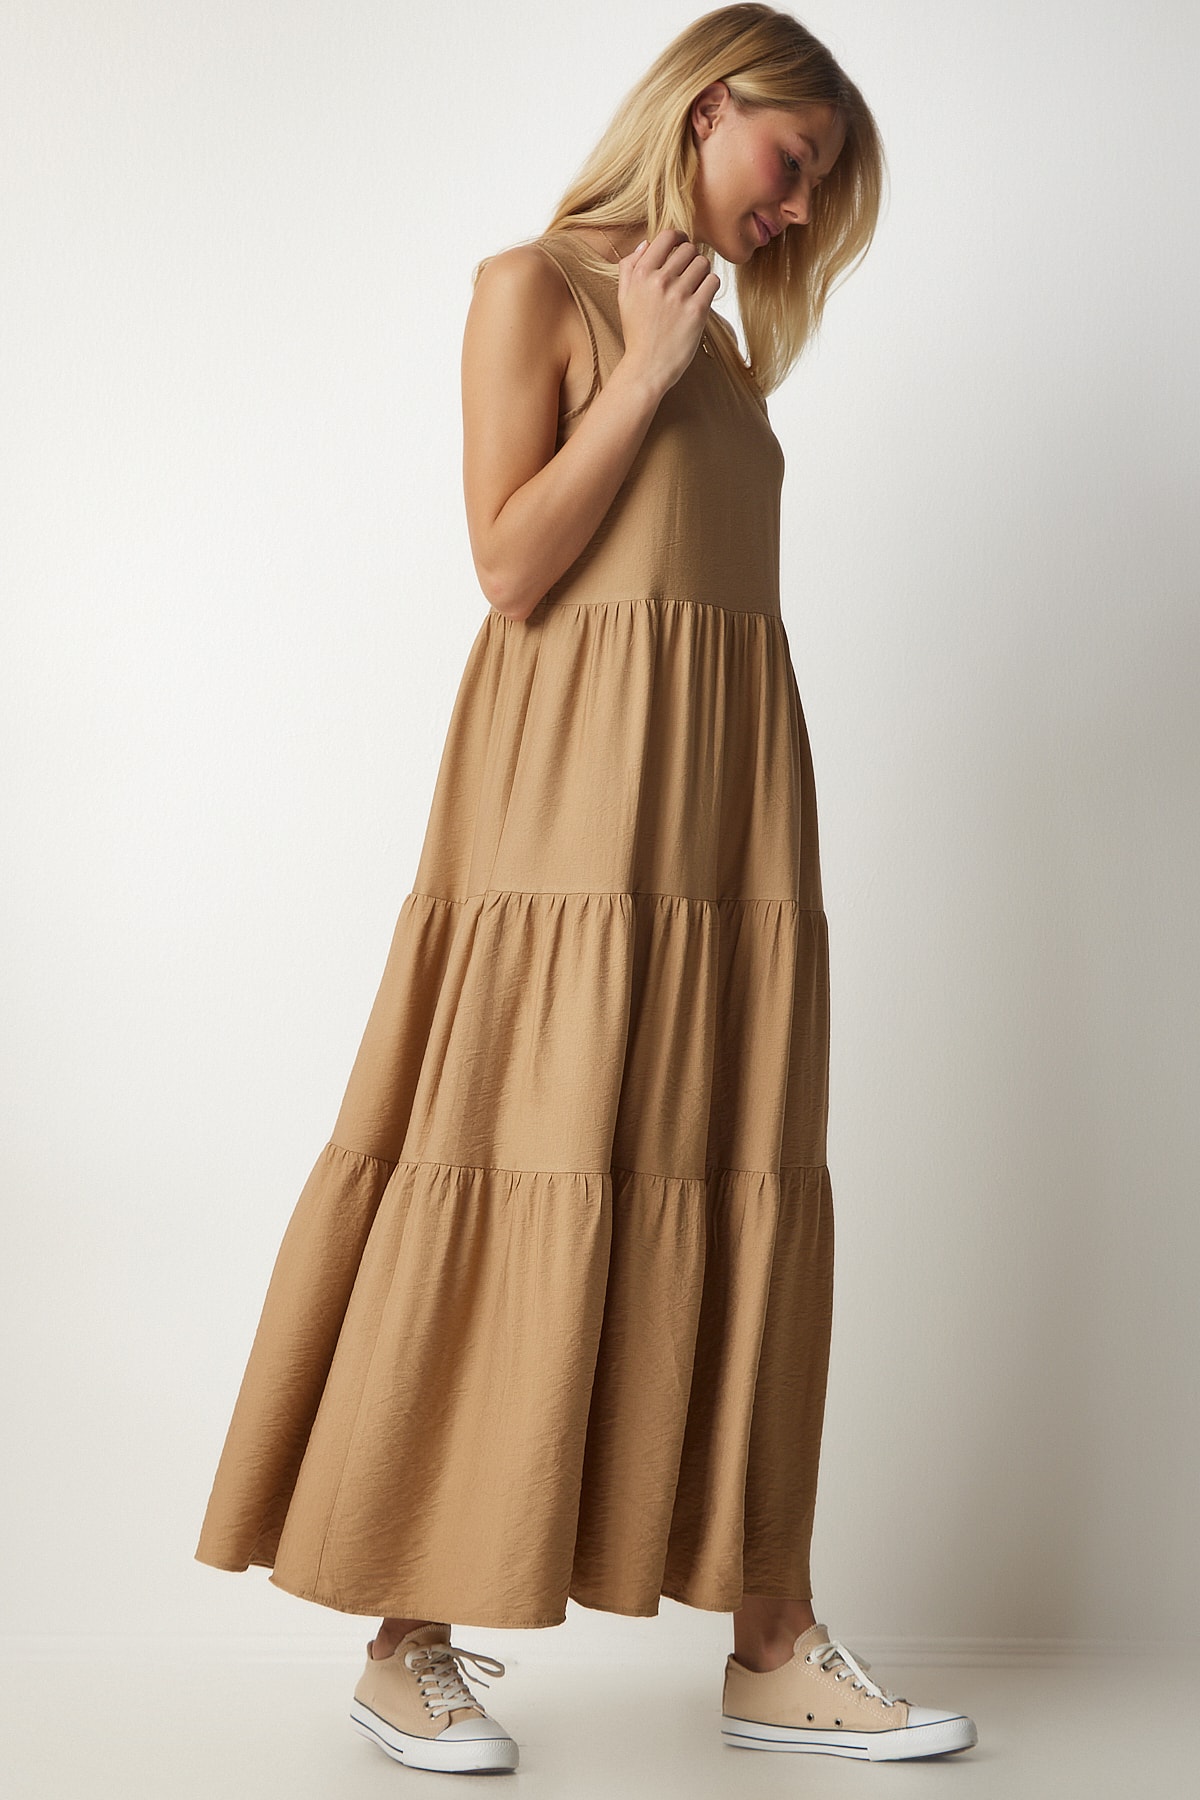 цена Женское трикотажное платье без рукавов с бисквитным воланом Happiness İstanbul, коричневый